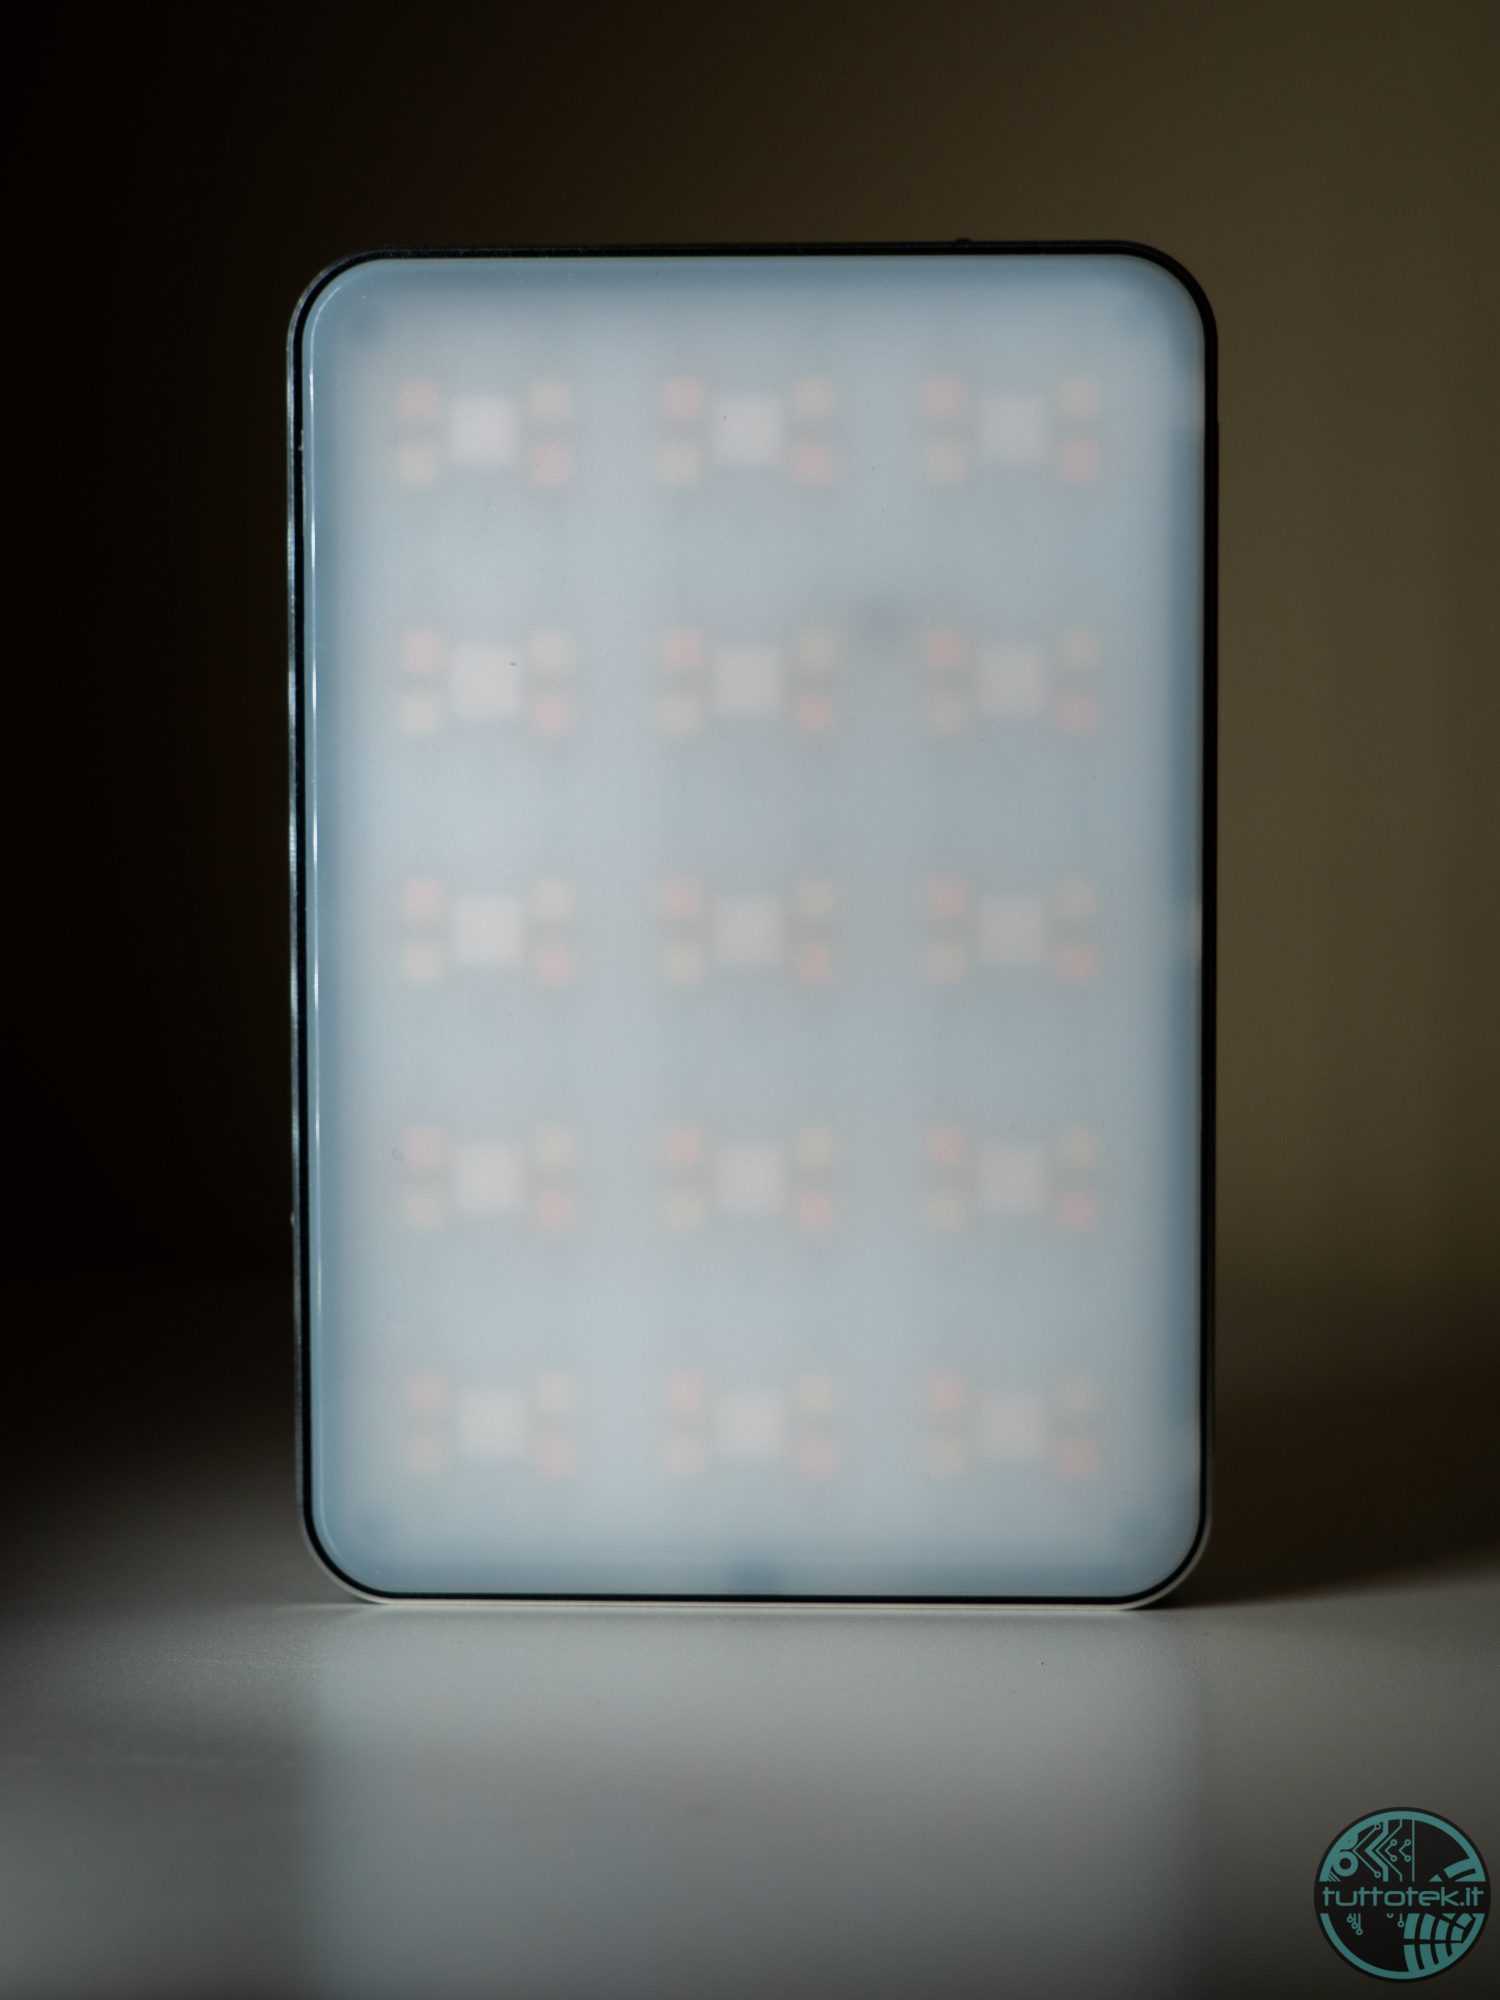 Confronto tra SmallRig Pix M160 e RM75: le migliori luci portatili?